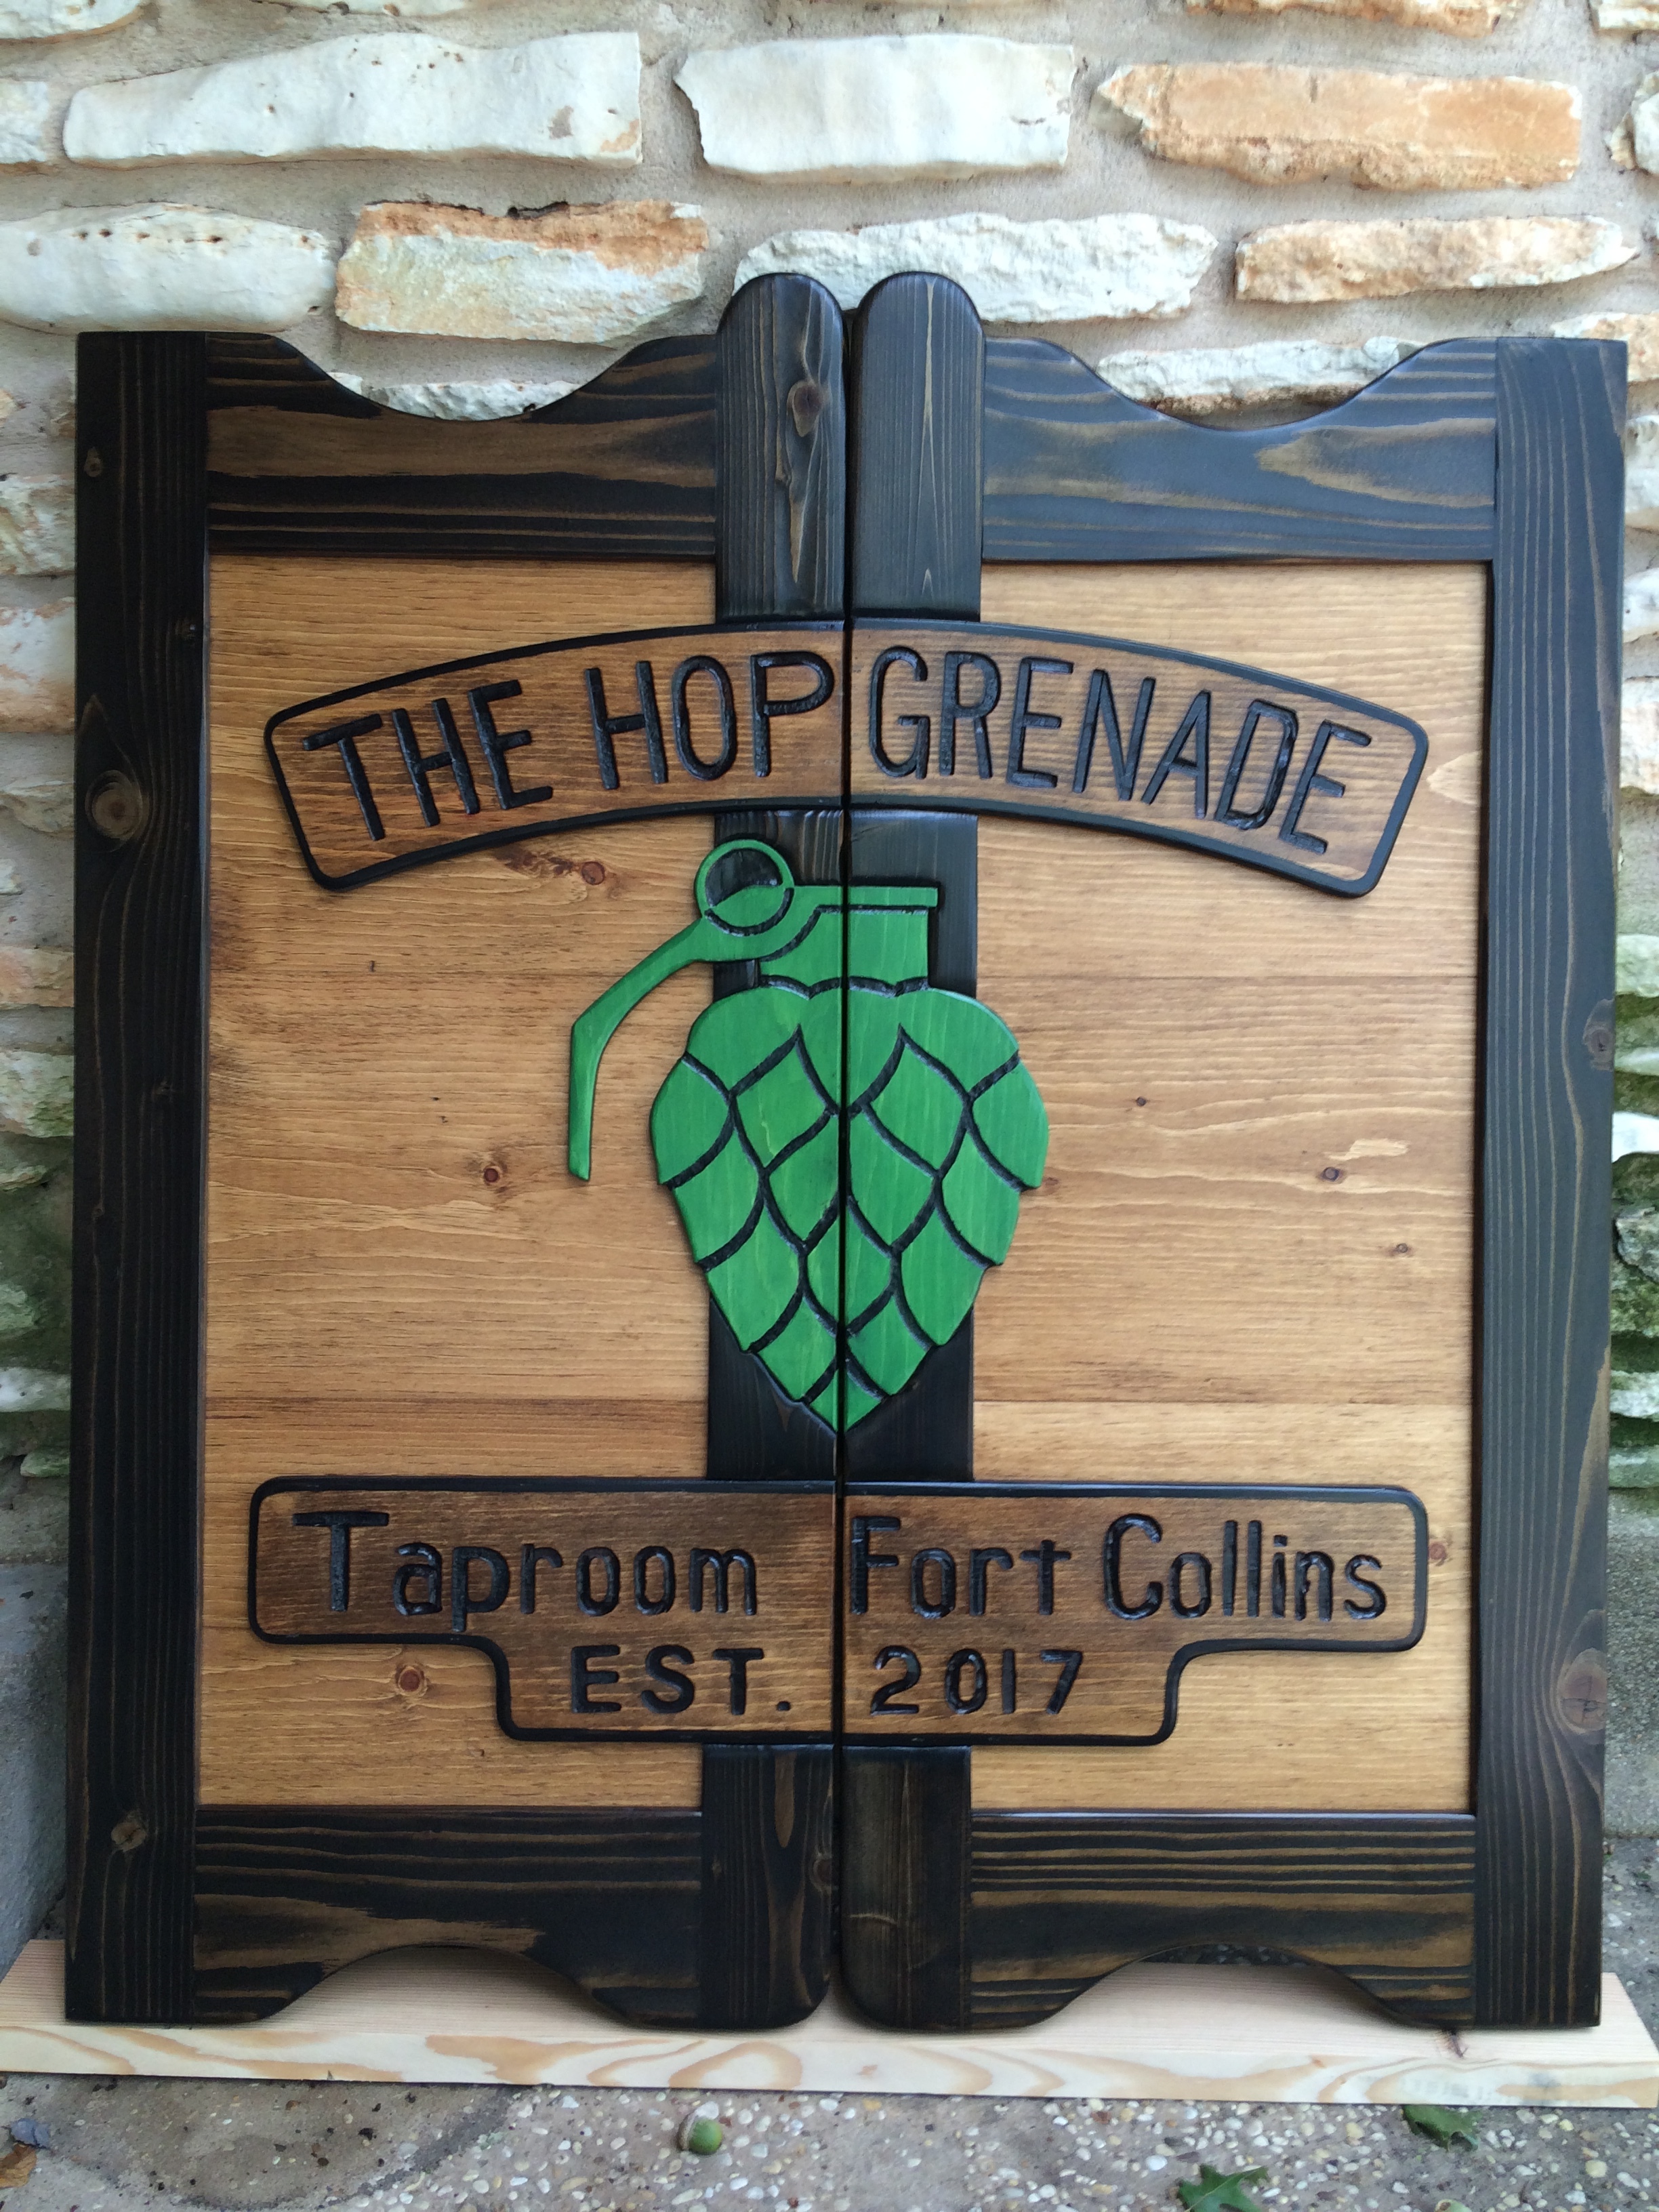 The Hop Grenade western saloon door with company logo